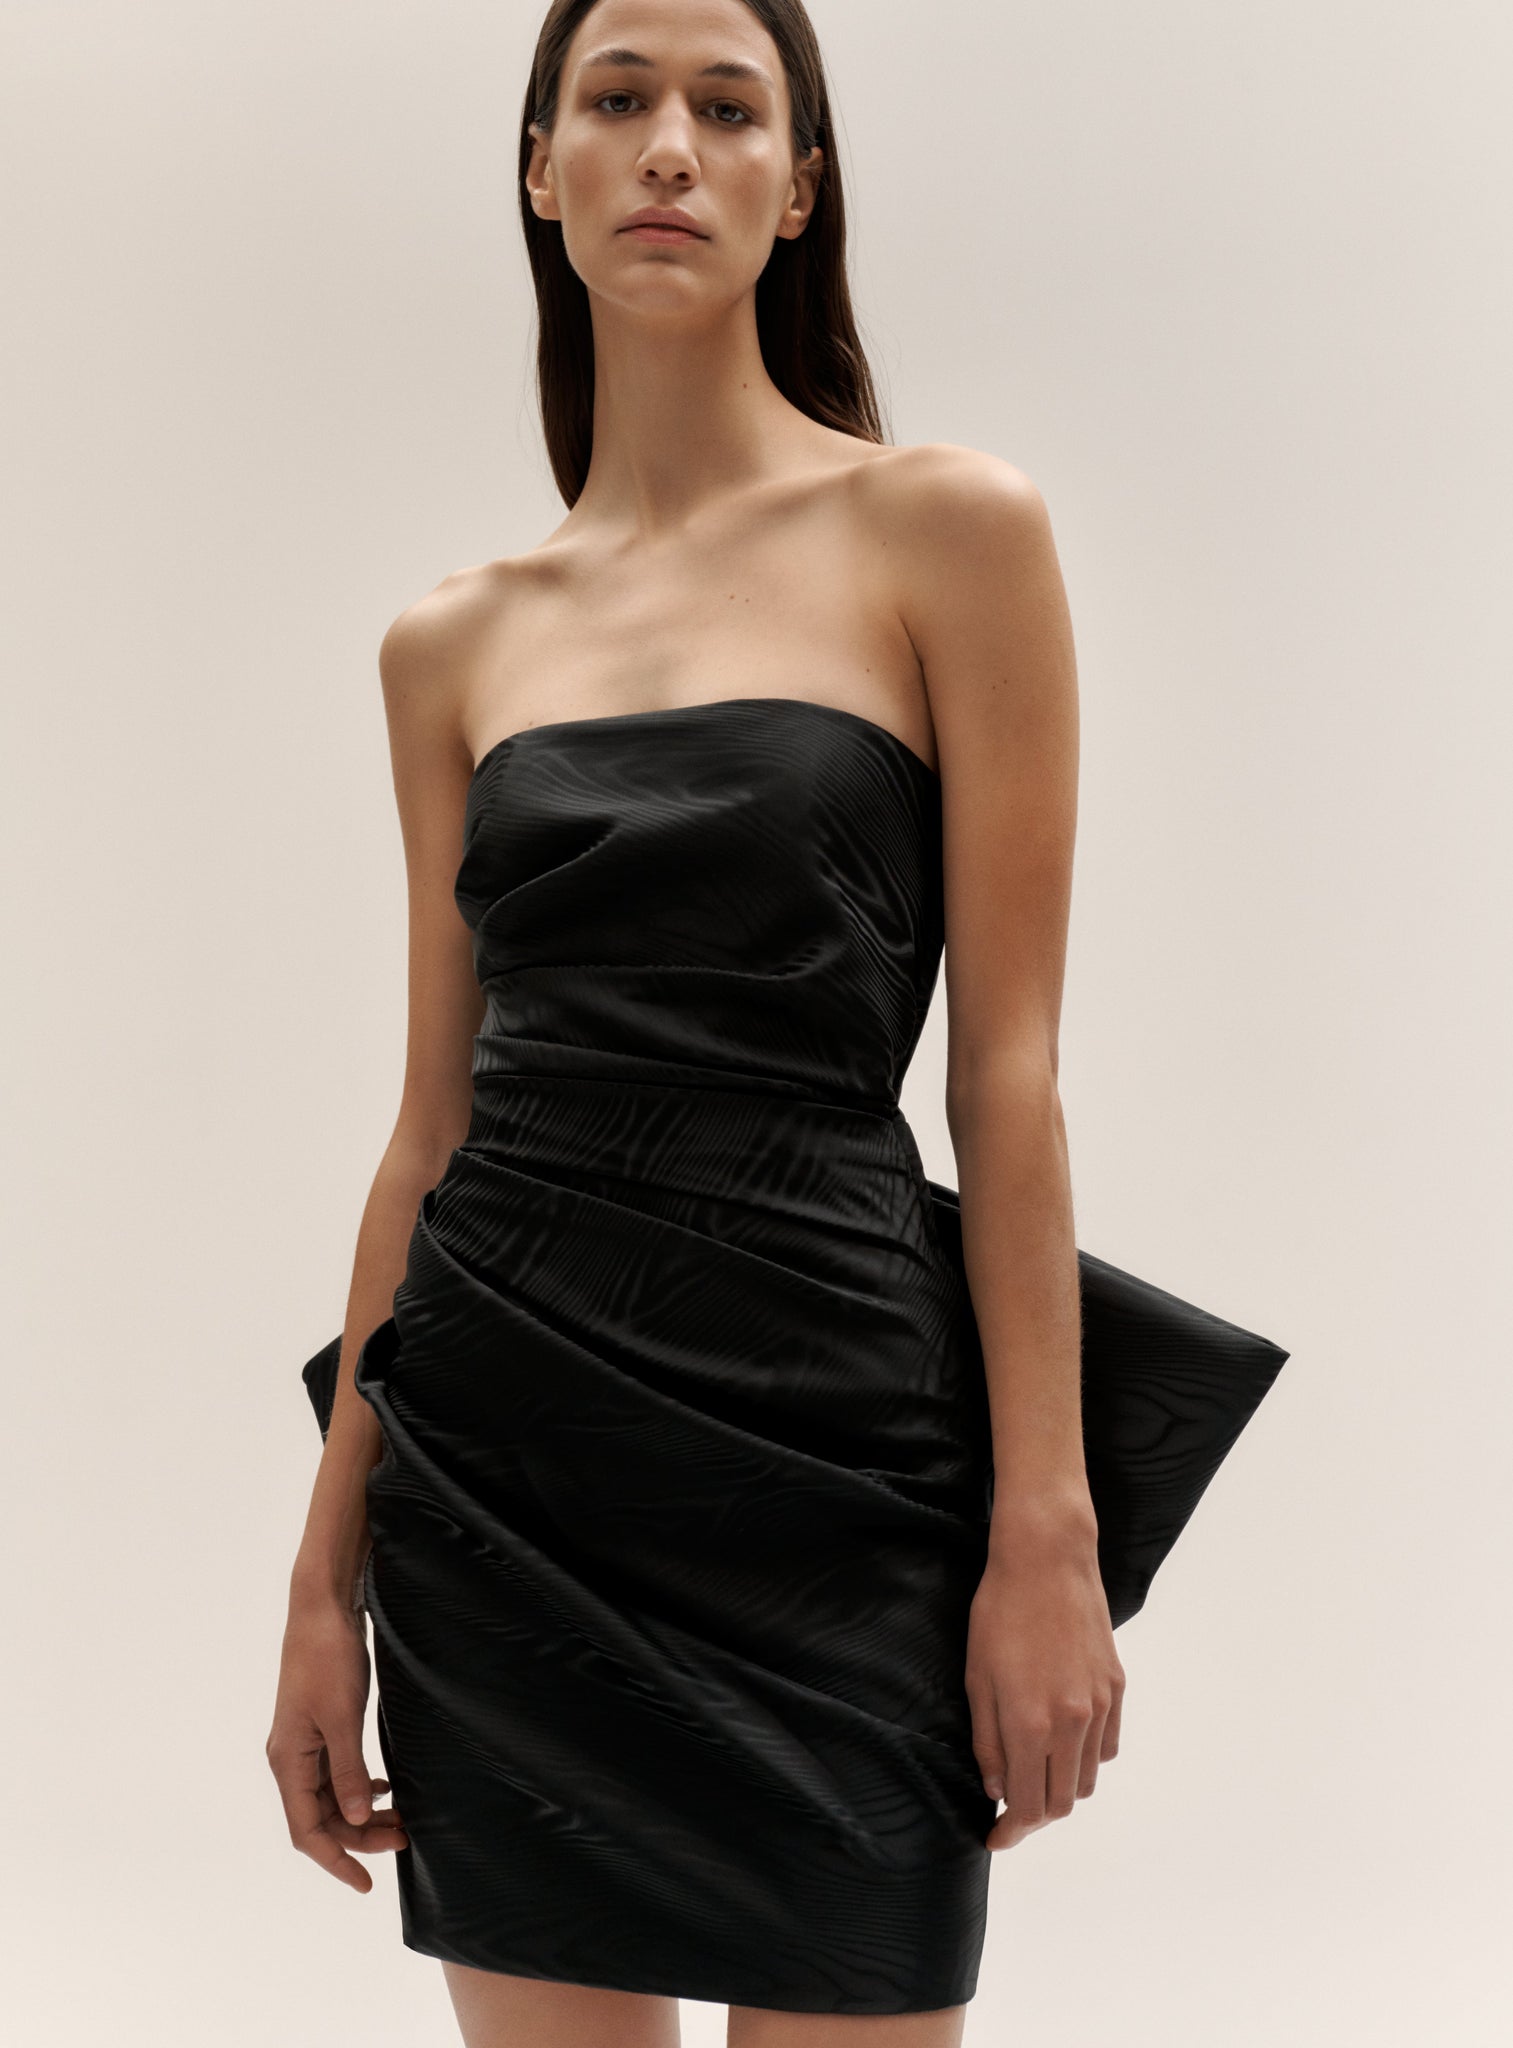 The Posie Mini Dress in Black